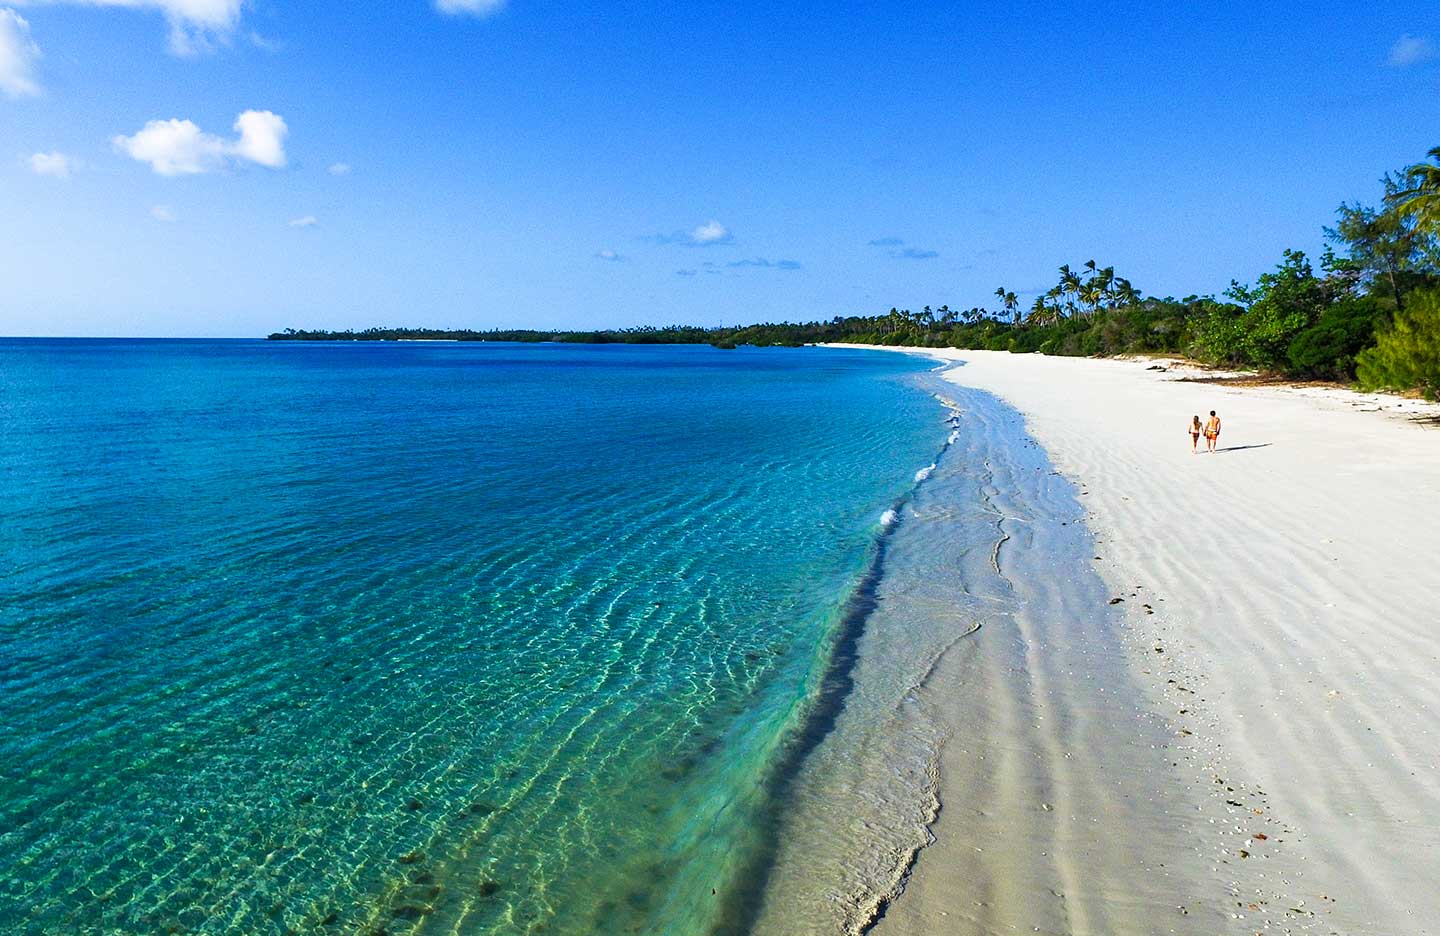 Mafia island beach Tanzania, With its fine sandy beaches, swaying palms and lush vegetation,